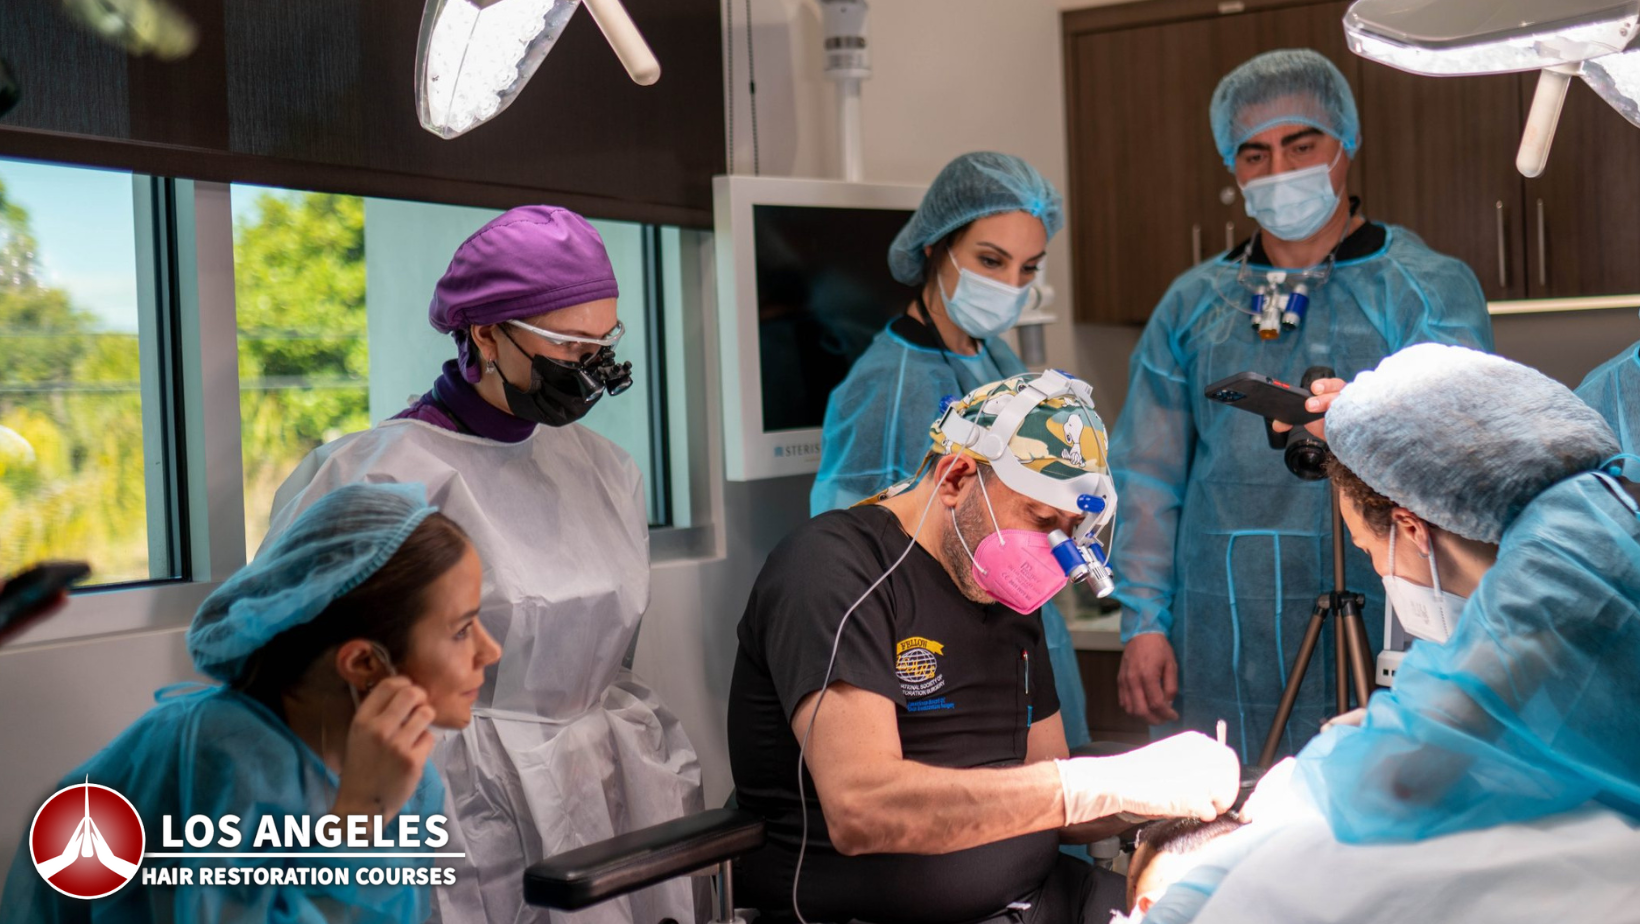 Los Angeles kurser för hårrestaurering 2022 - Live Surgery Observation Hårtransplantationskirurgi